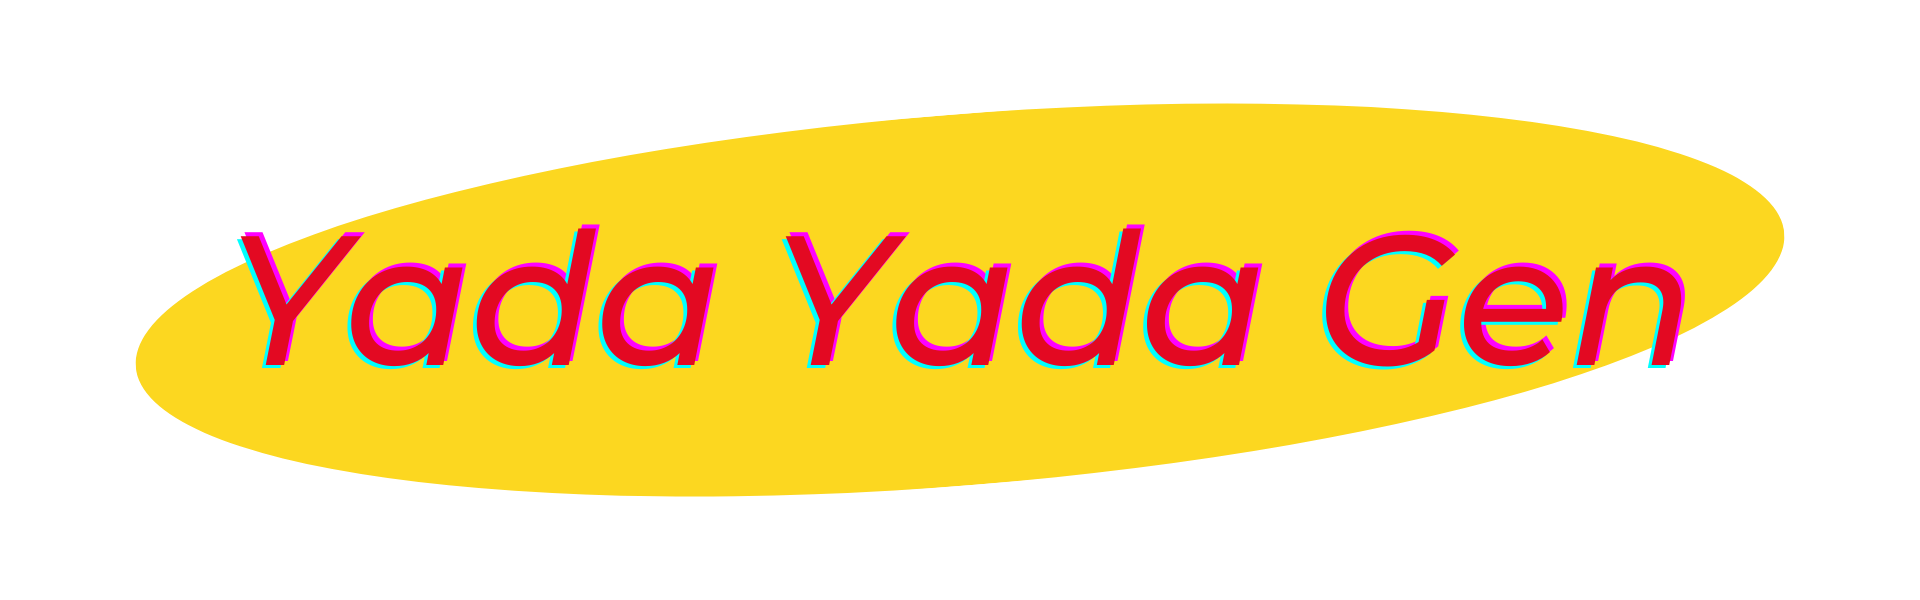 yada-yada-gen-image